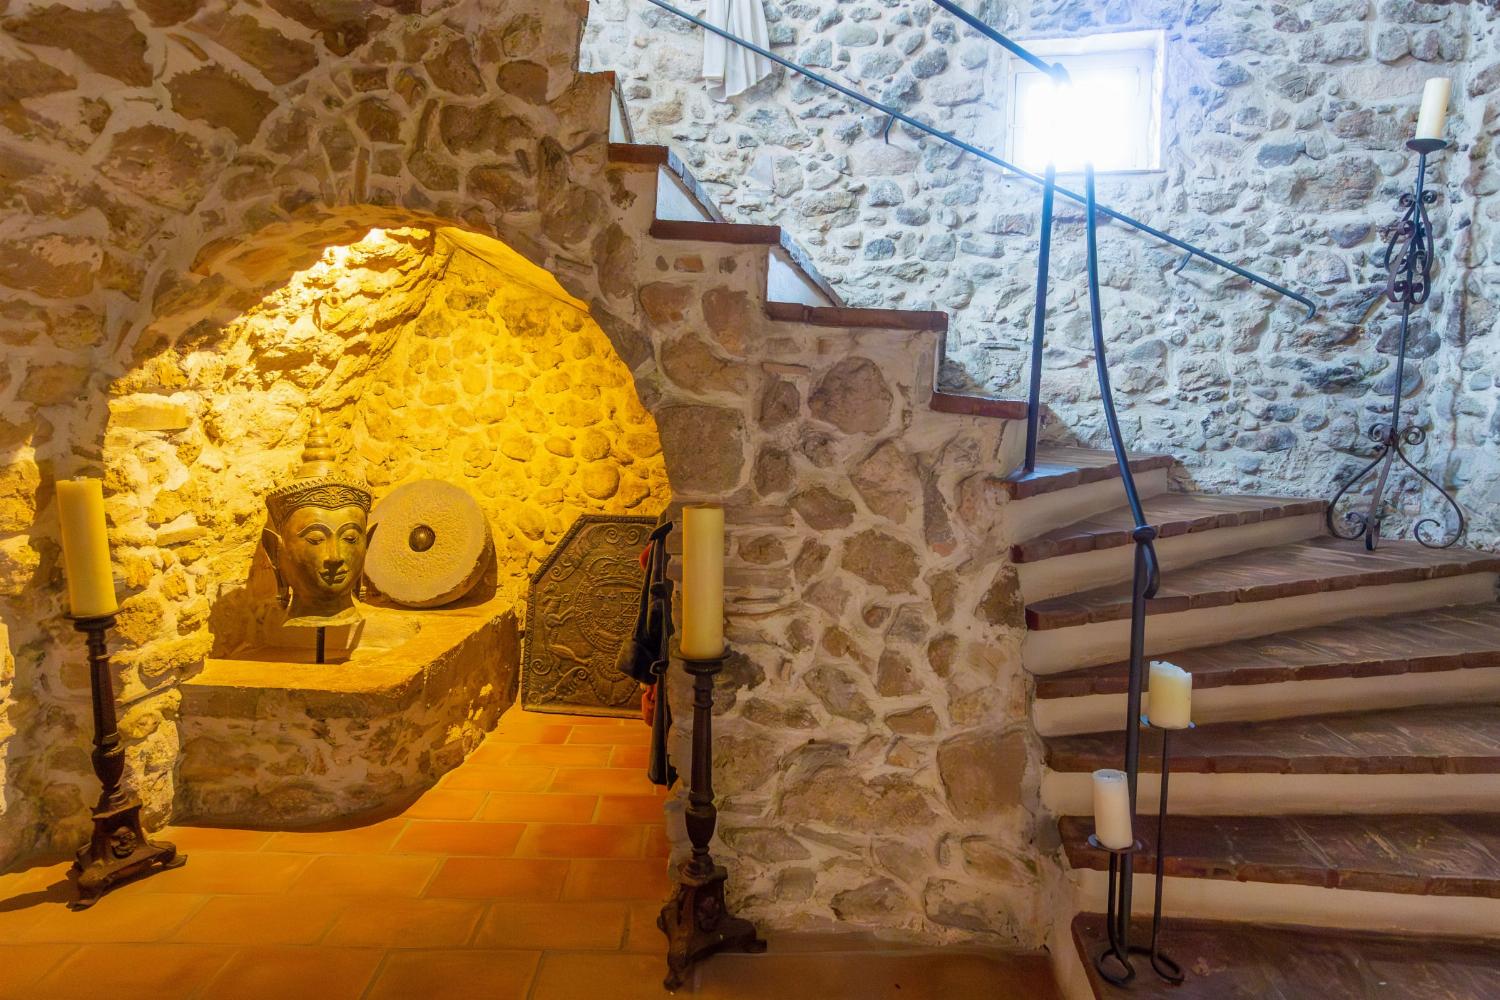 Escalier | Villa de vacances en Provence